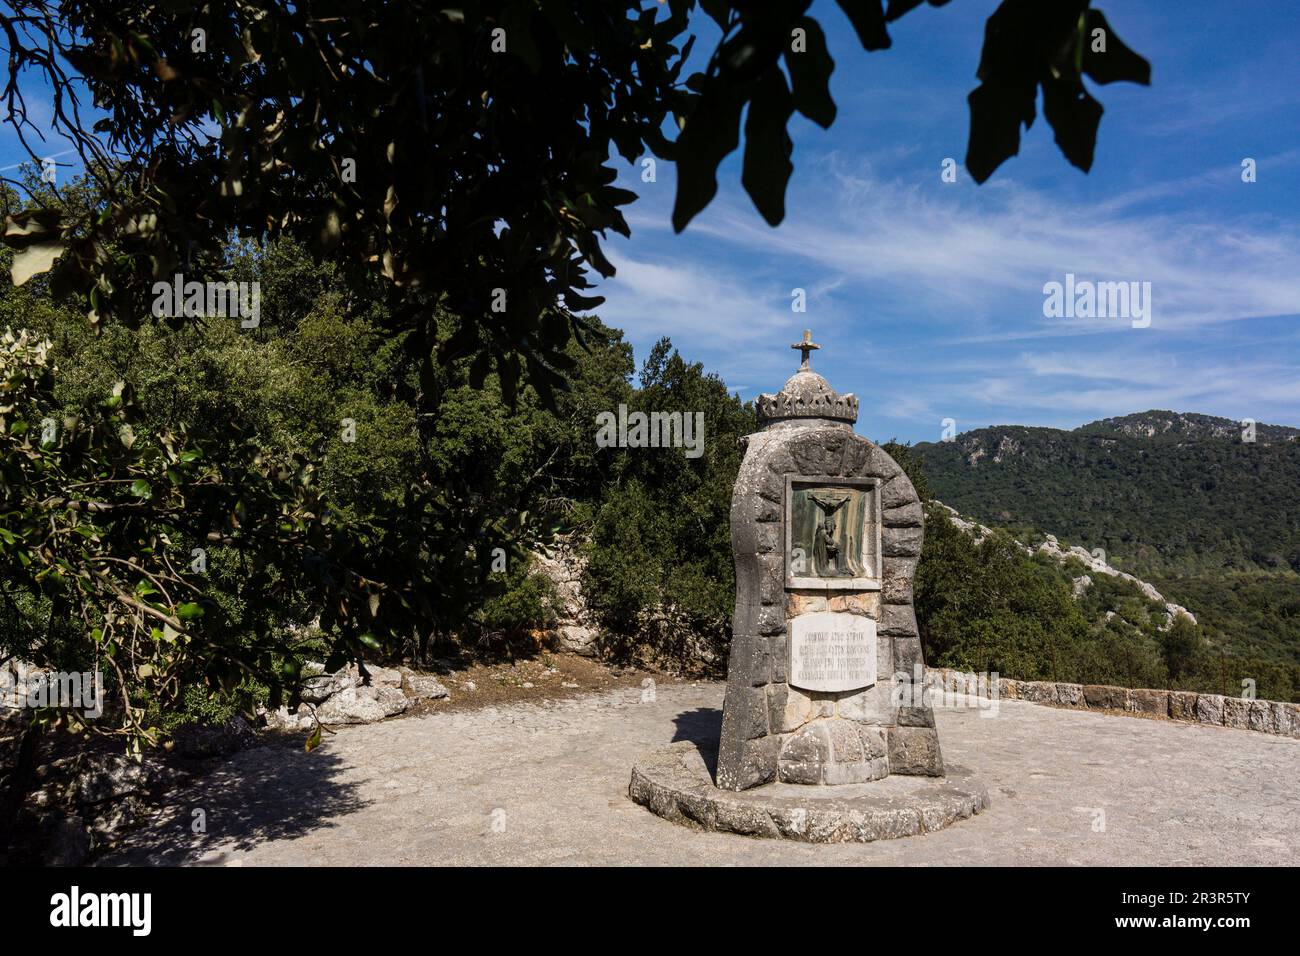 Santuario di Lluc, XVII secolo, Monte dei misteri, Escorca, Sierra de Tramuntana, Maiorca, isole baleari, spagna, europa. Foto Stock